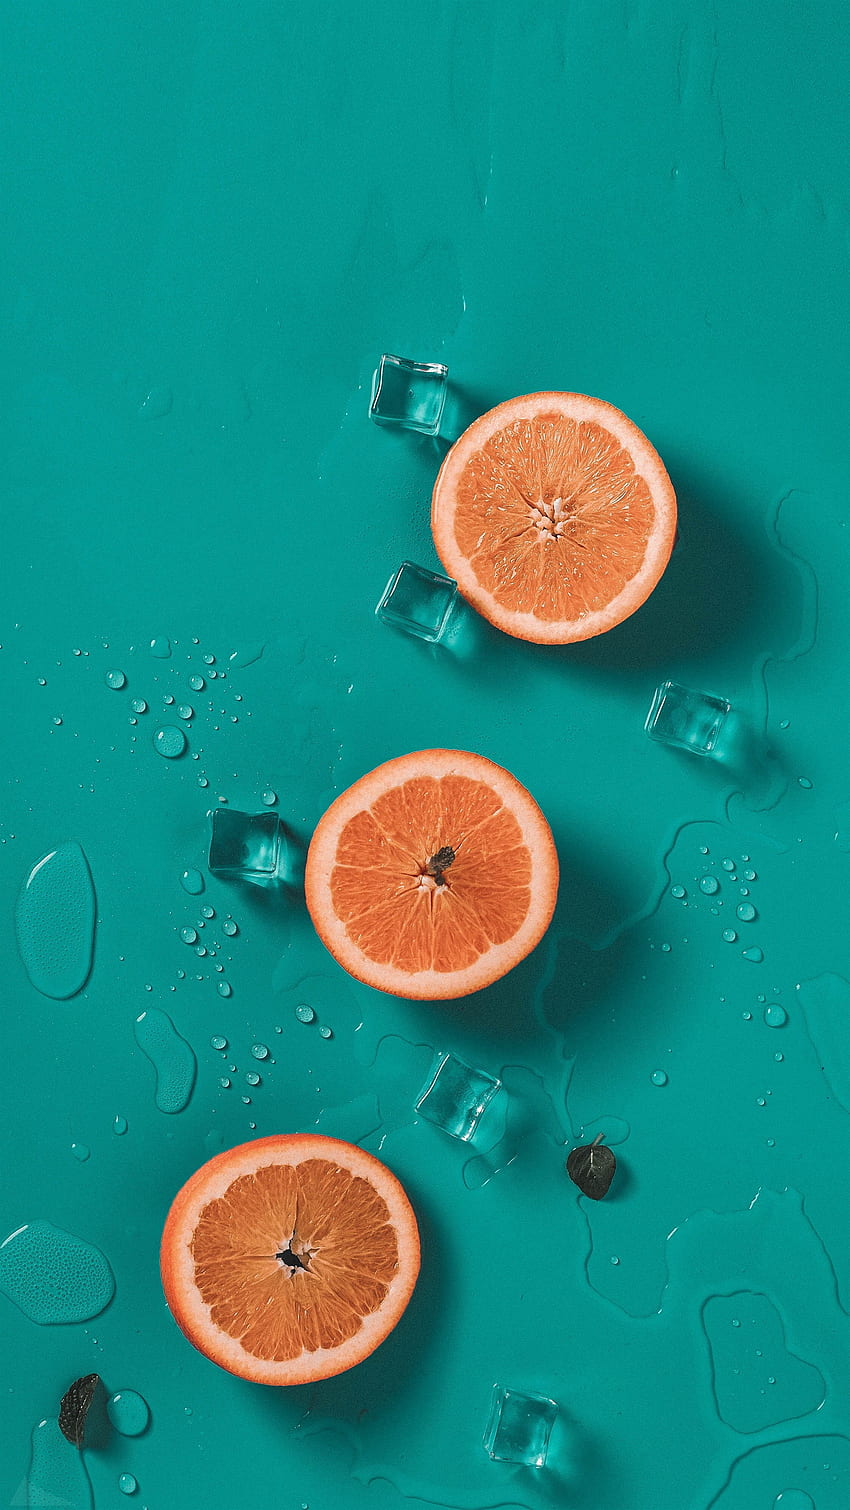 Ide Orange Dan Teal Aqua. Oranye Dan Pirus, Oranye, Aqua wallpaper ponsel HD